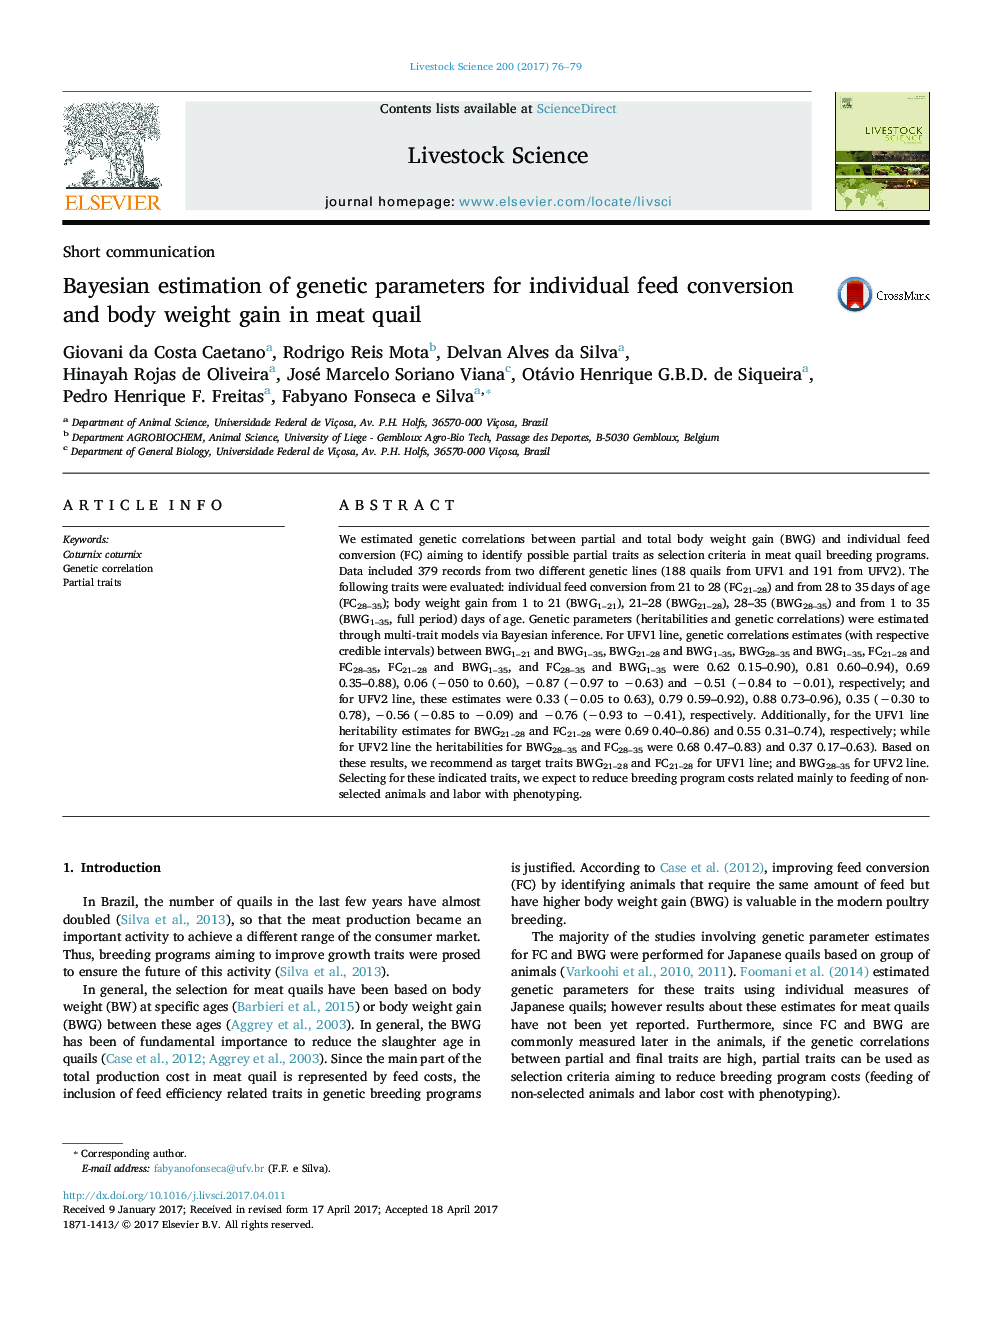 برآورد بیزی برای پارامترهای ژنتیکی برای تبدیل خوراک فردی و افزایش وزن بدن در بلدرچین گوشت 